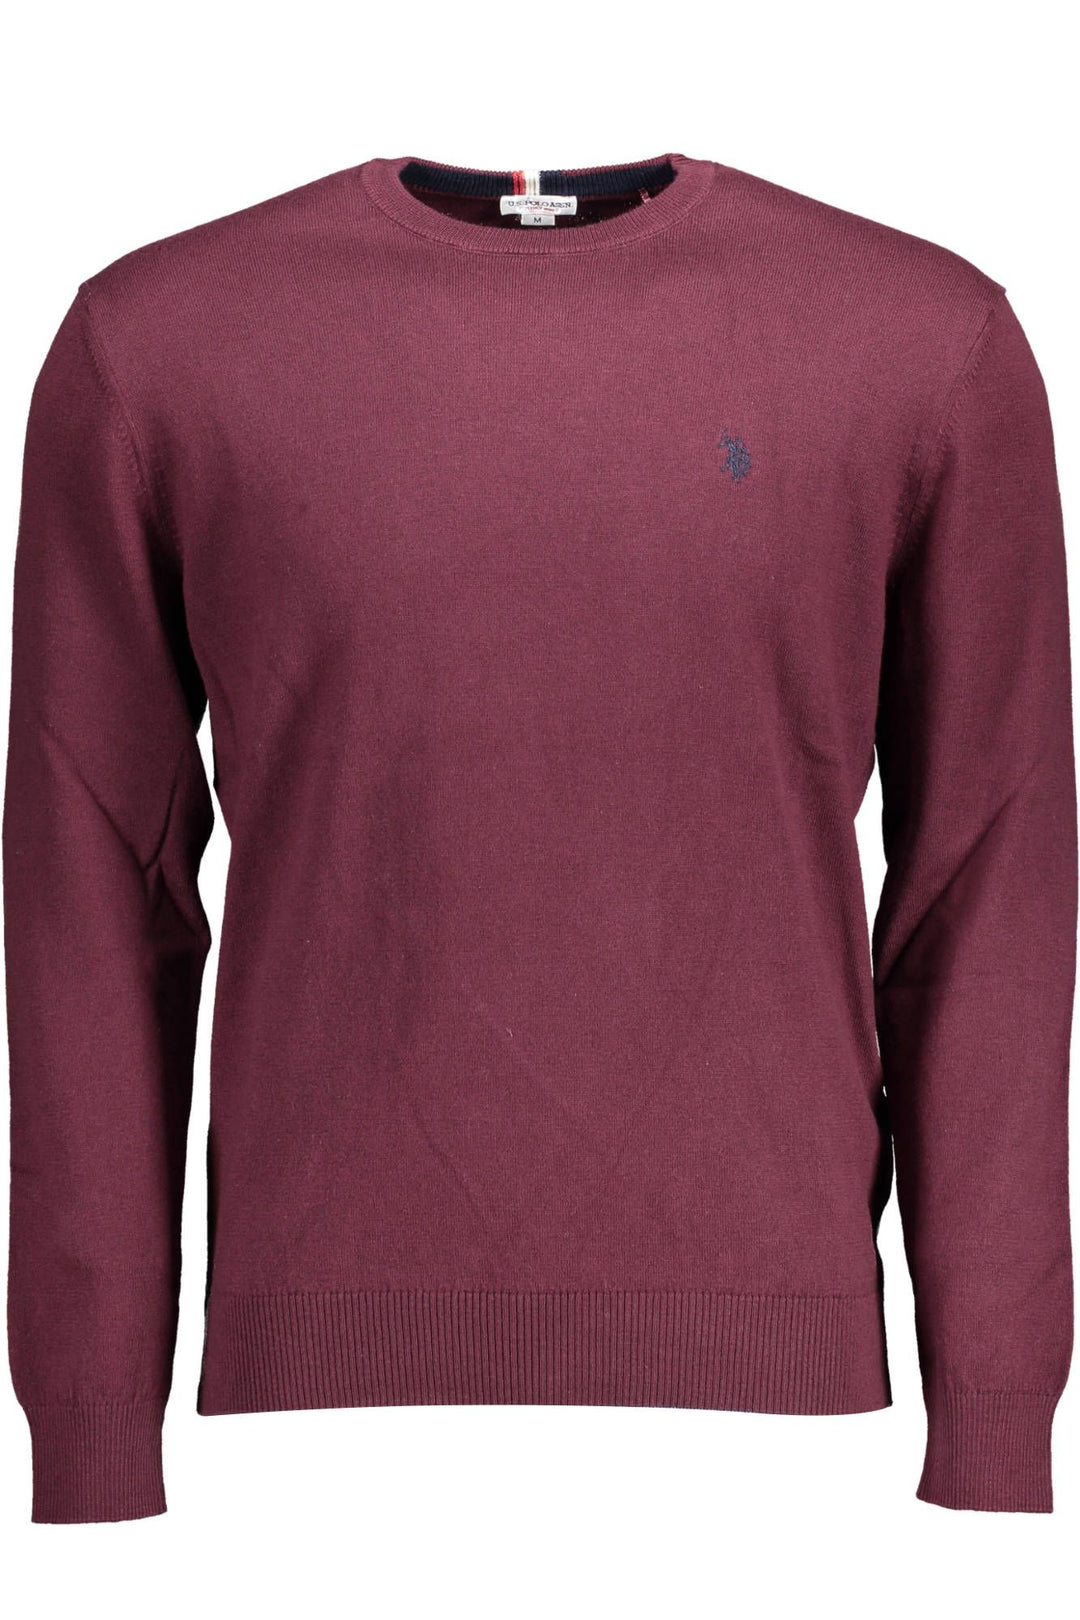 U.S. Polo Assn. Purple Cotton Sweater